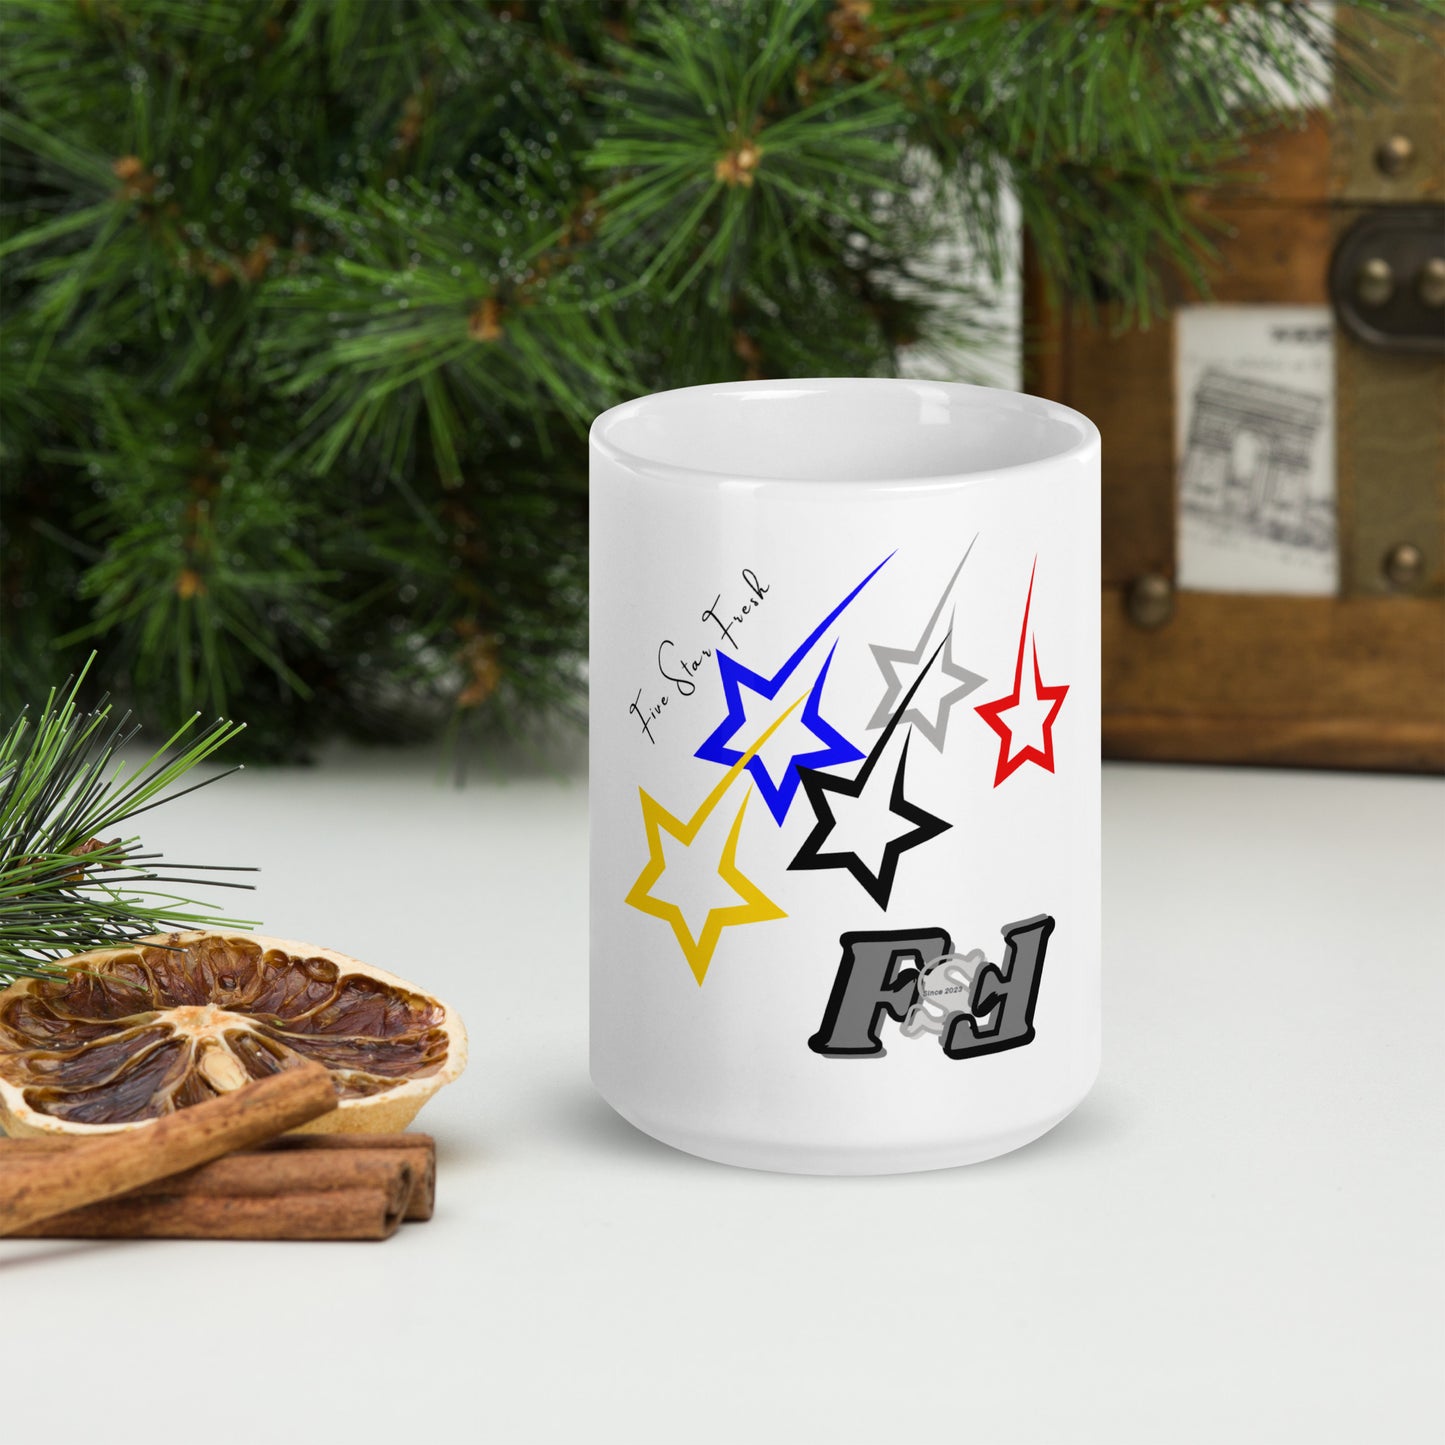 'Shooting Star' Bright - Five Star Fresh White glossy mug